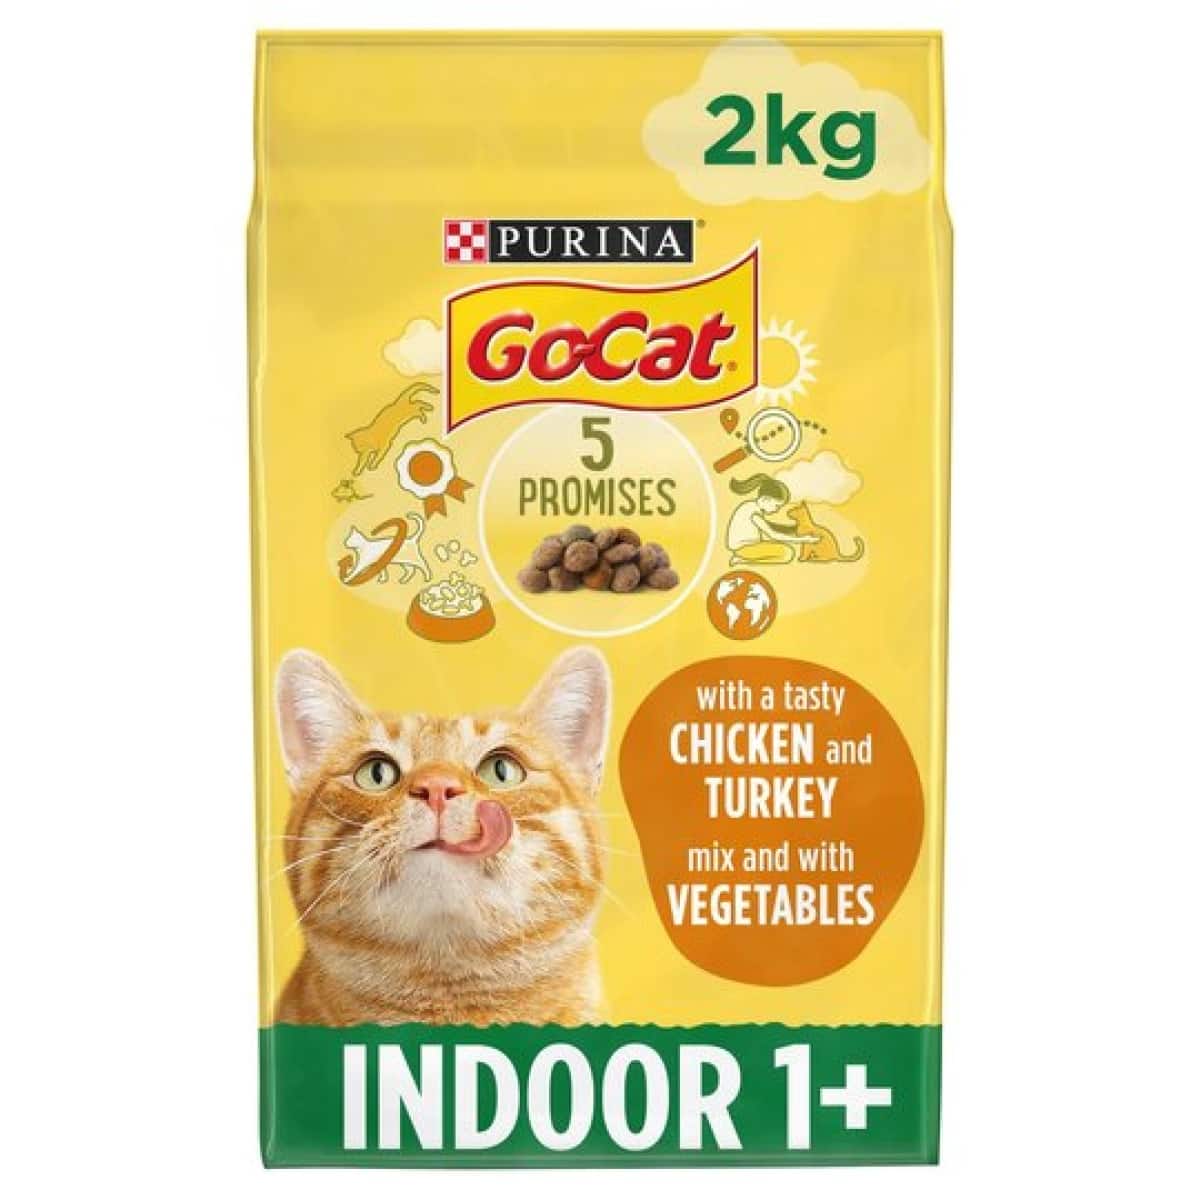 Go-Cat Indoor Chicken & Turkey 2kg Main Image